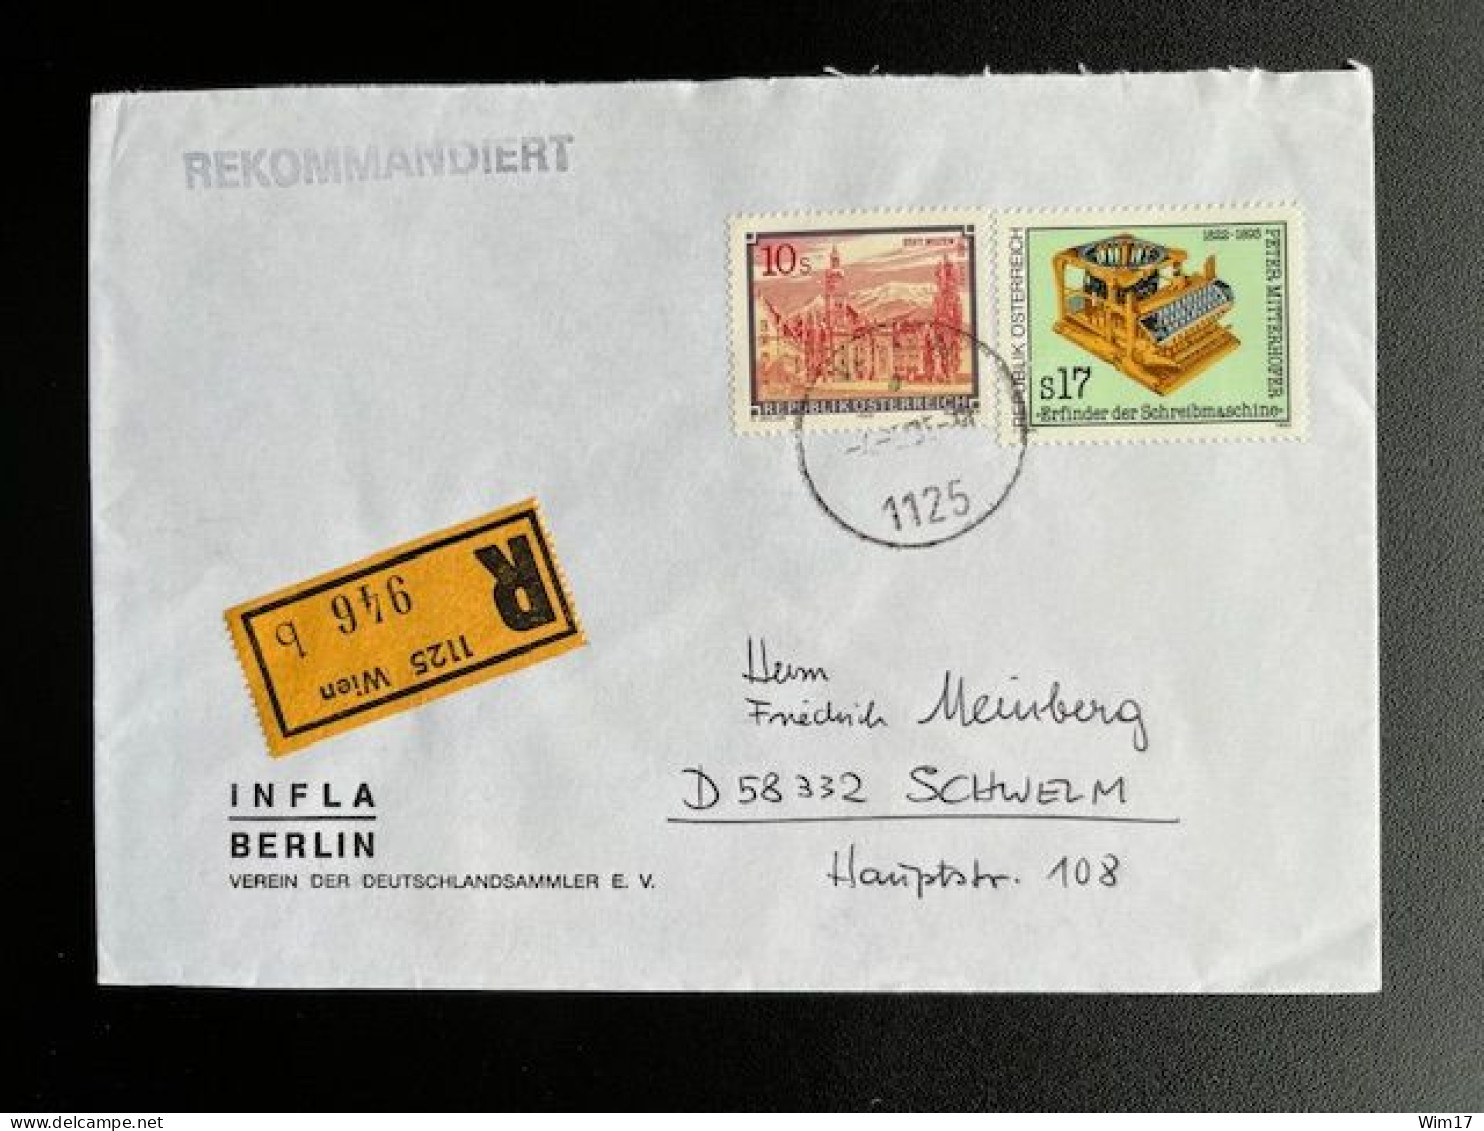 AUSTRIA 1995 REGISTERED LETTER VIENNA WIEN TO SCHWELM 04-05-1995 OOSTENRIJK OSTERREICH EINSCHREIBEN - Covers & Documents